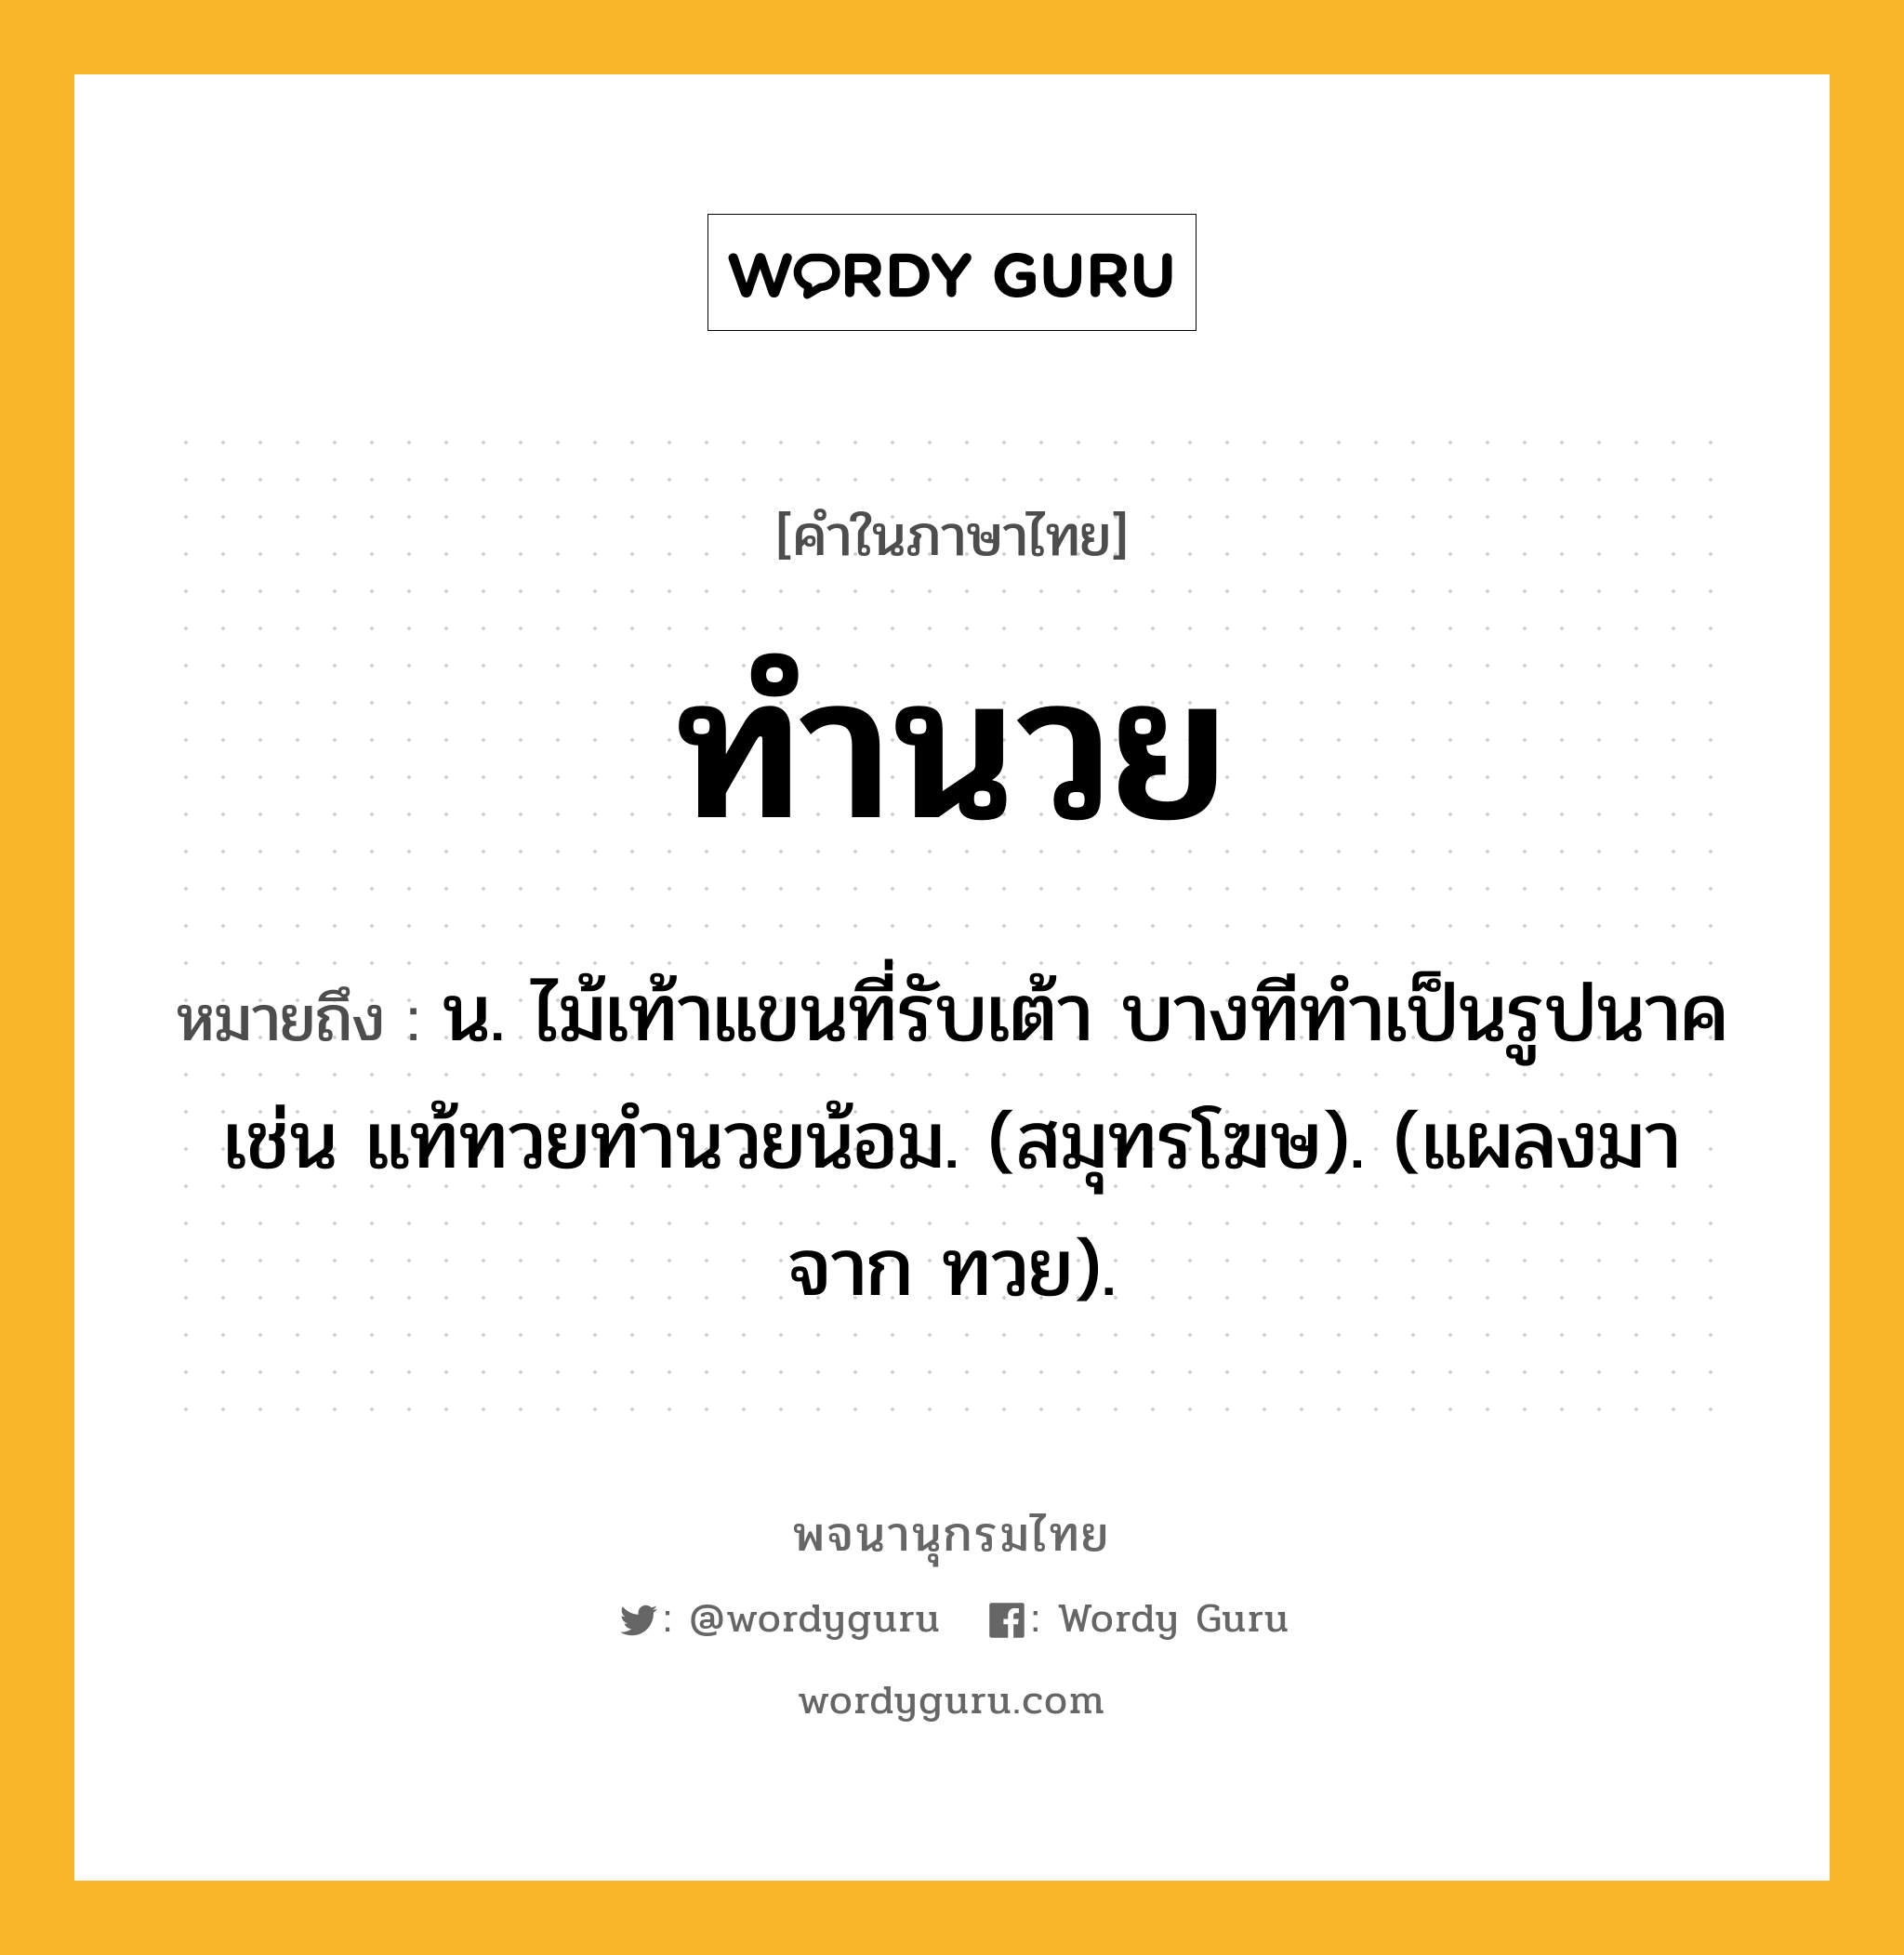 ทำนวย ความหมาย หมายถึงอะไร?, คำในภาษาไทย ทำนวย หมายถึง น. ไม้เท้าแขนที่รับเต้า บางทีทําเป็นรูปนาค เช่น แท้ทวยทํานวยน้อม. (สมุทรโฆษ). (แผลงมาจาก ทวย).